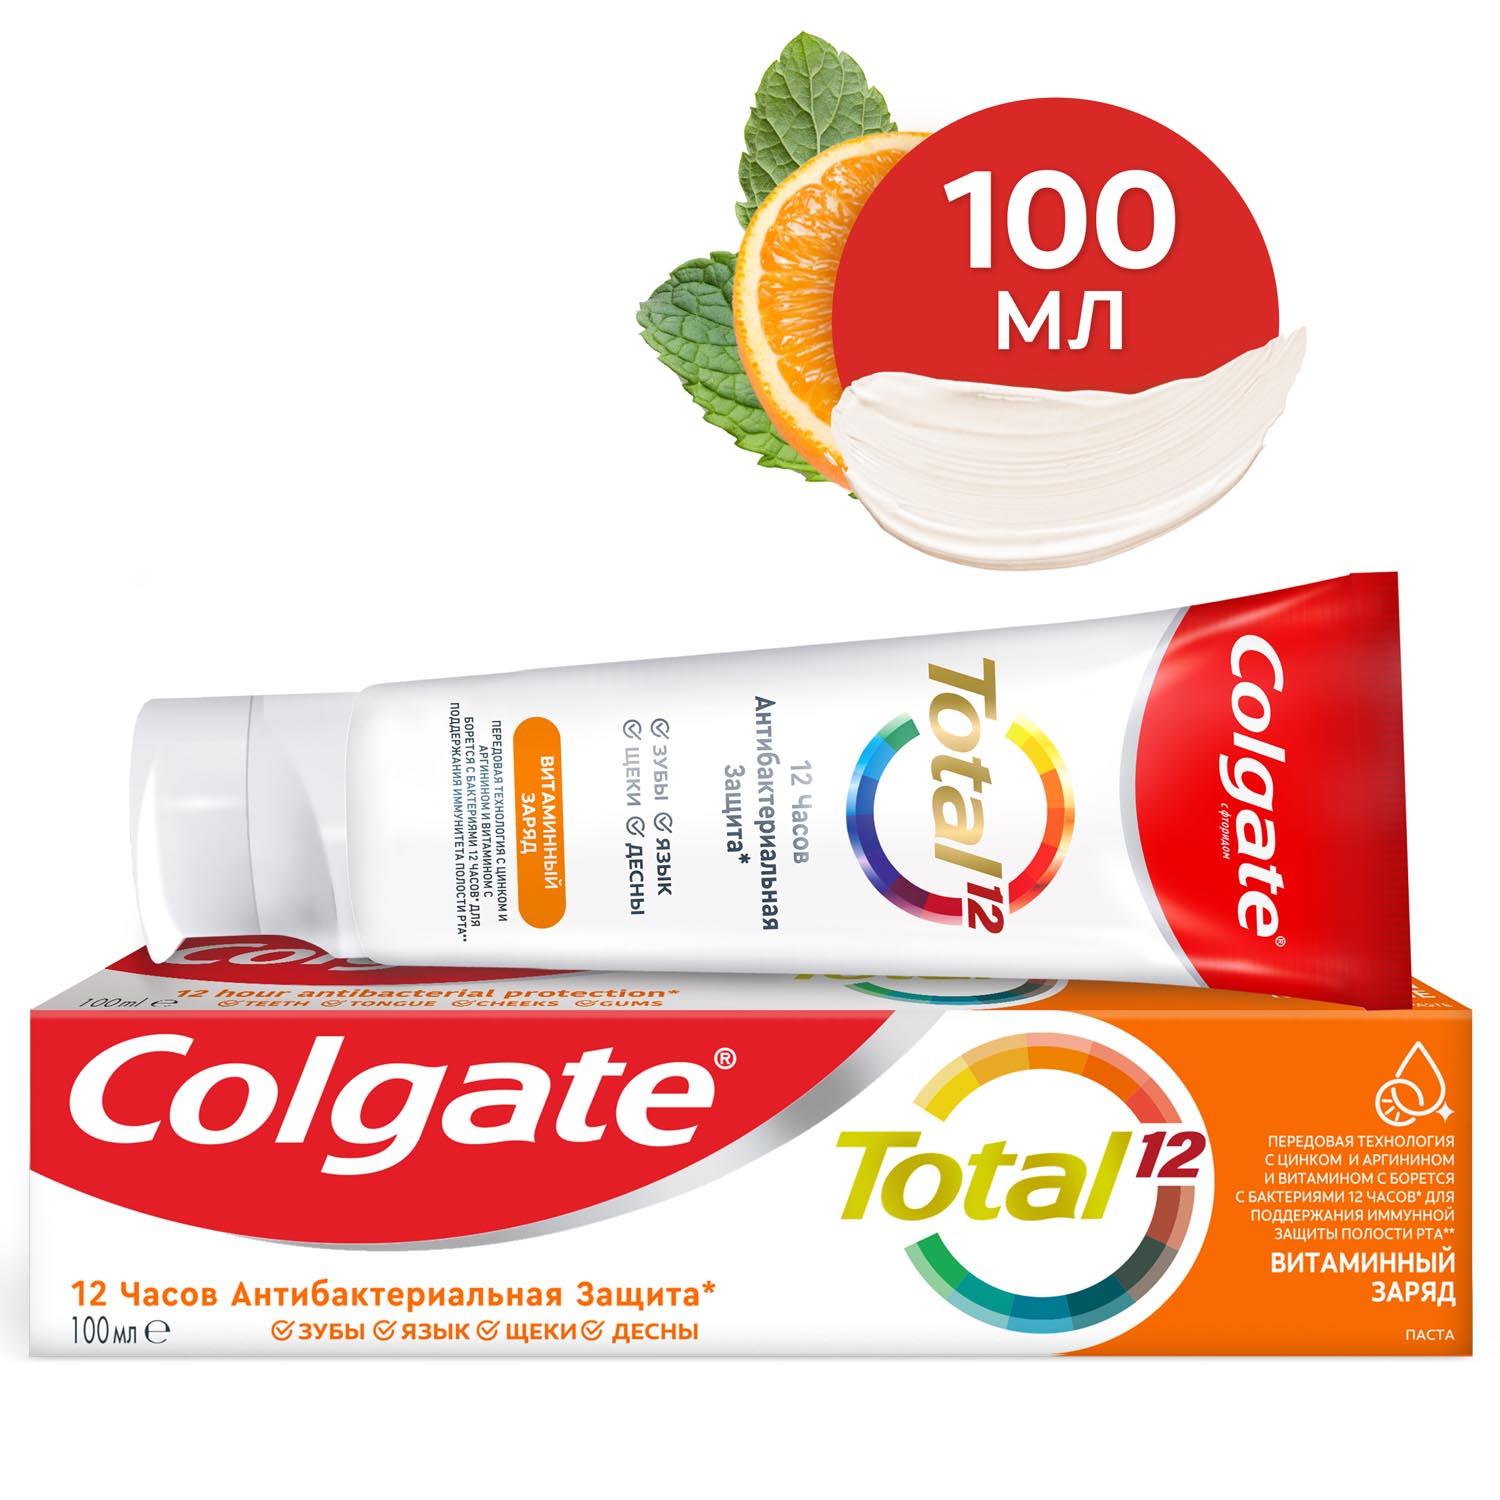 Зубная паста Colgate Total 12 Витаминный заряд с цинком и аргинином для комплексной антибактериальной защиты всей полости рта в течение 12 часов, 100 мл зубная паста colgate total 12 профессиональная здоровье десен 75 мл